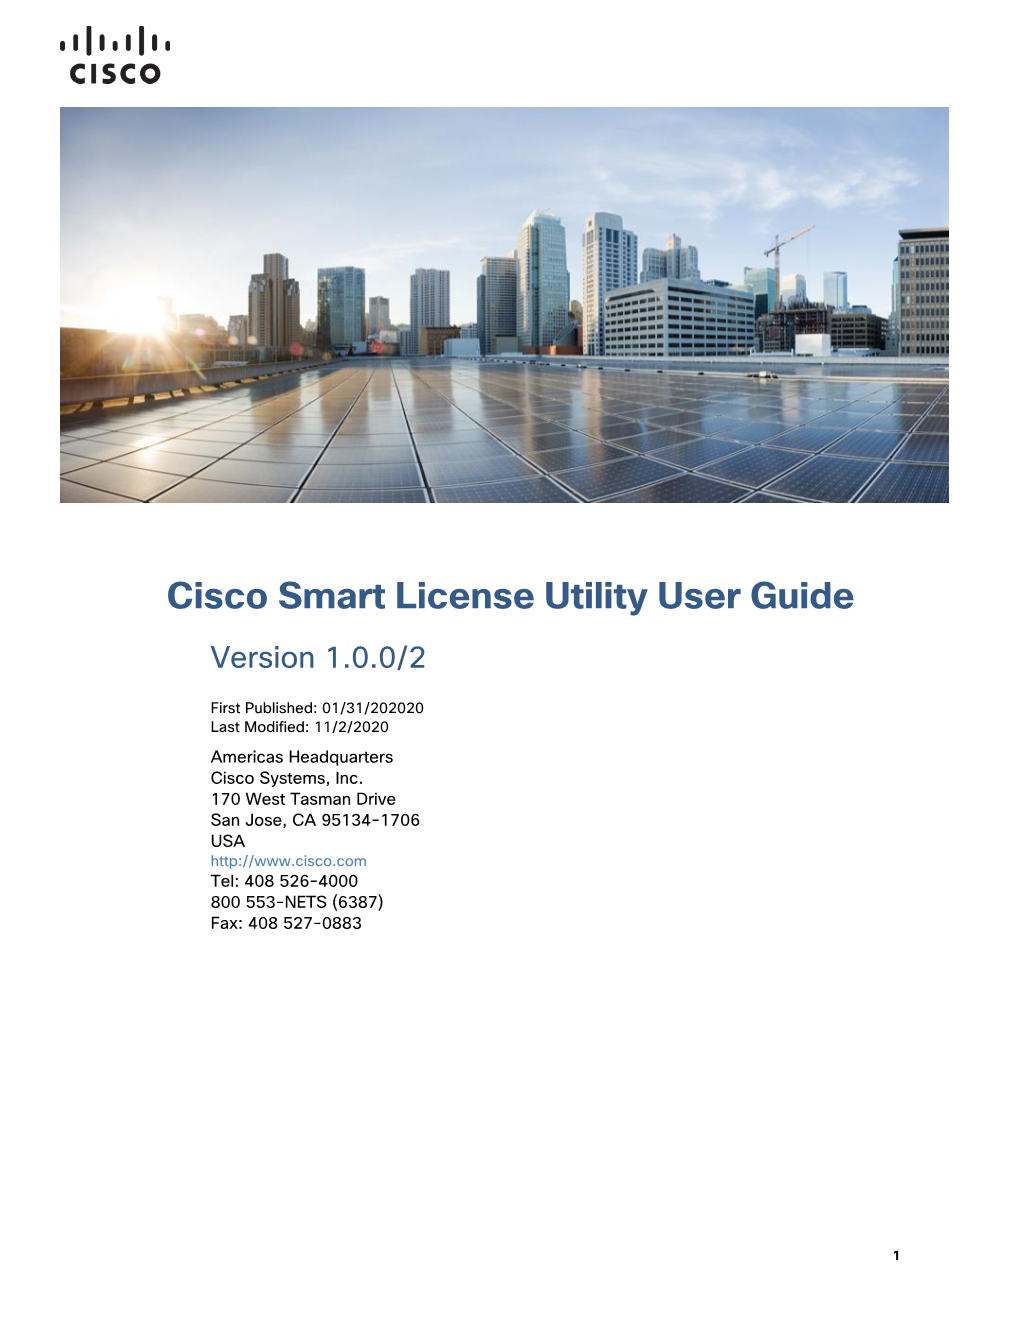 Cisco Smart License Utility User Guide Version 1.0.0/2